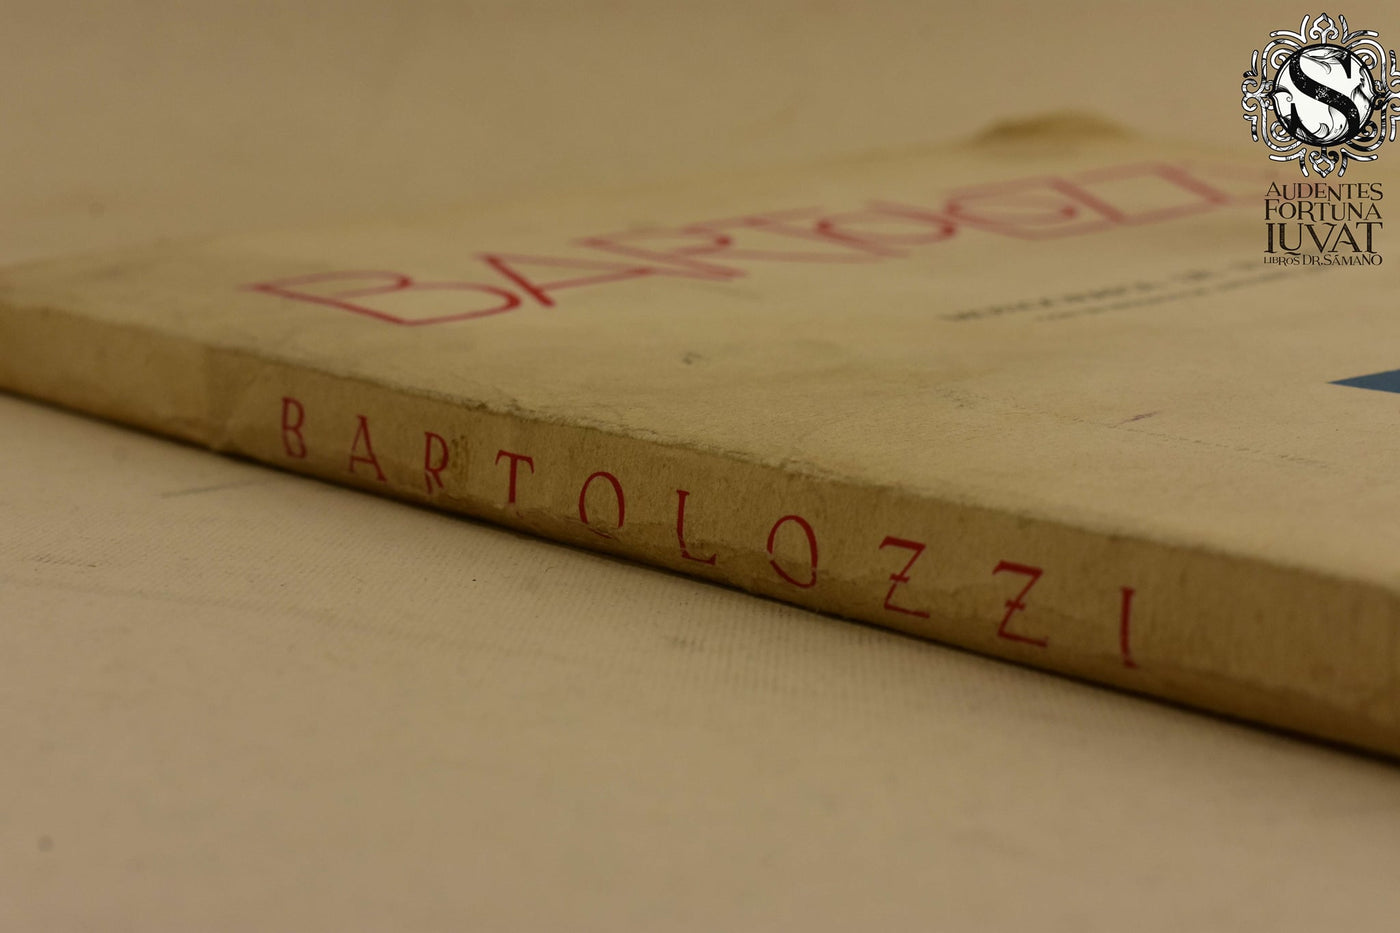 BARTOLOZZI - Monografía de su obra